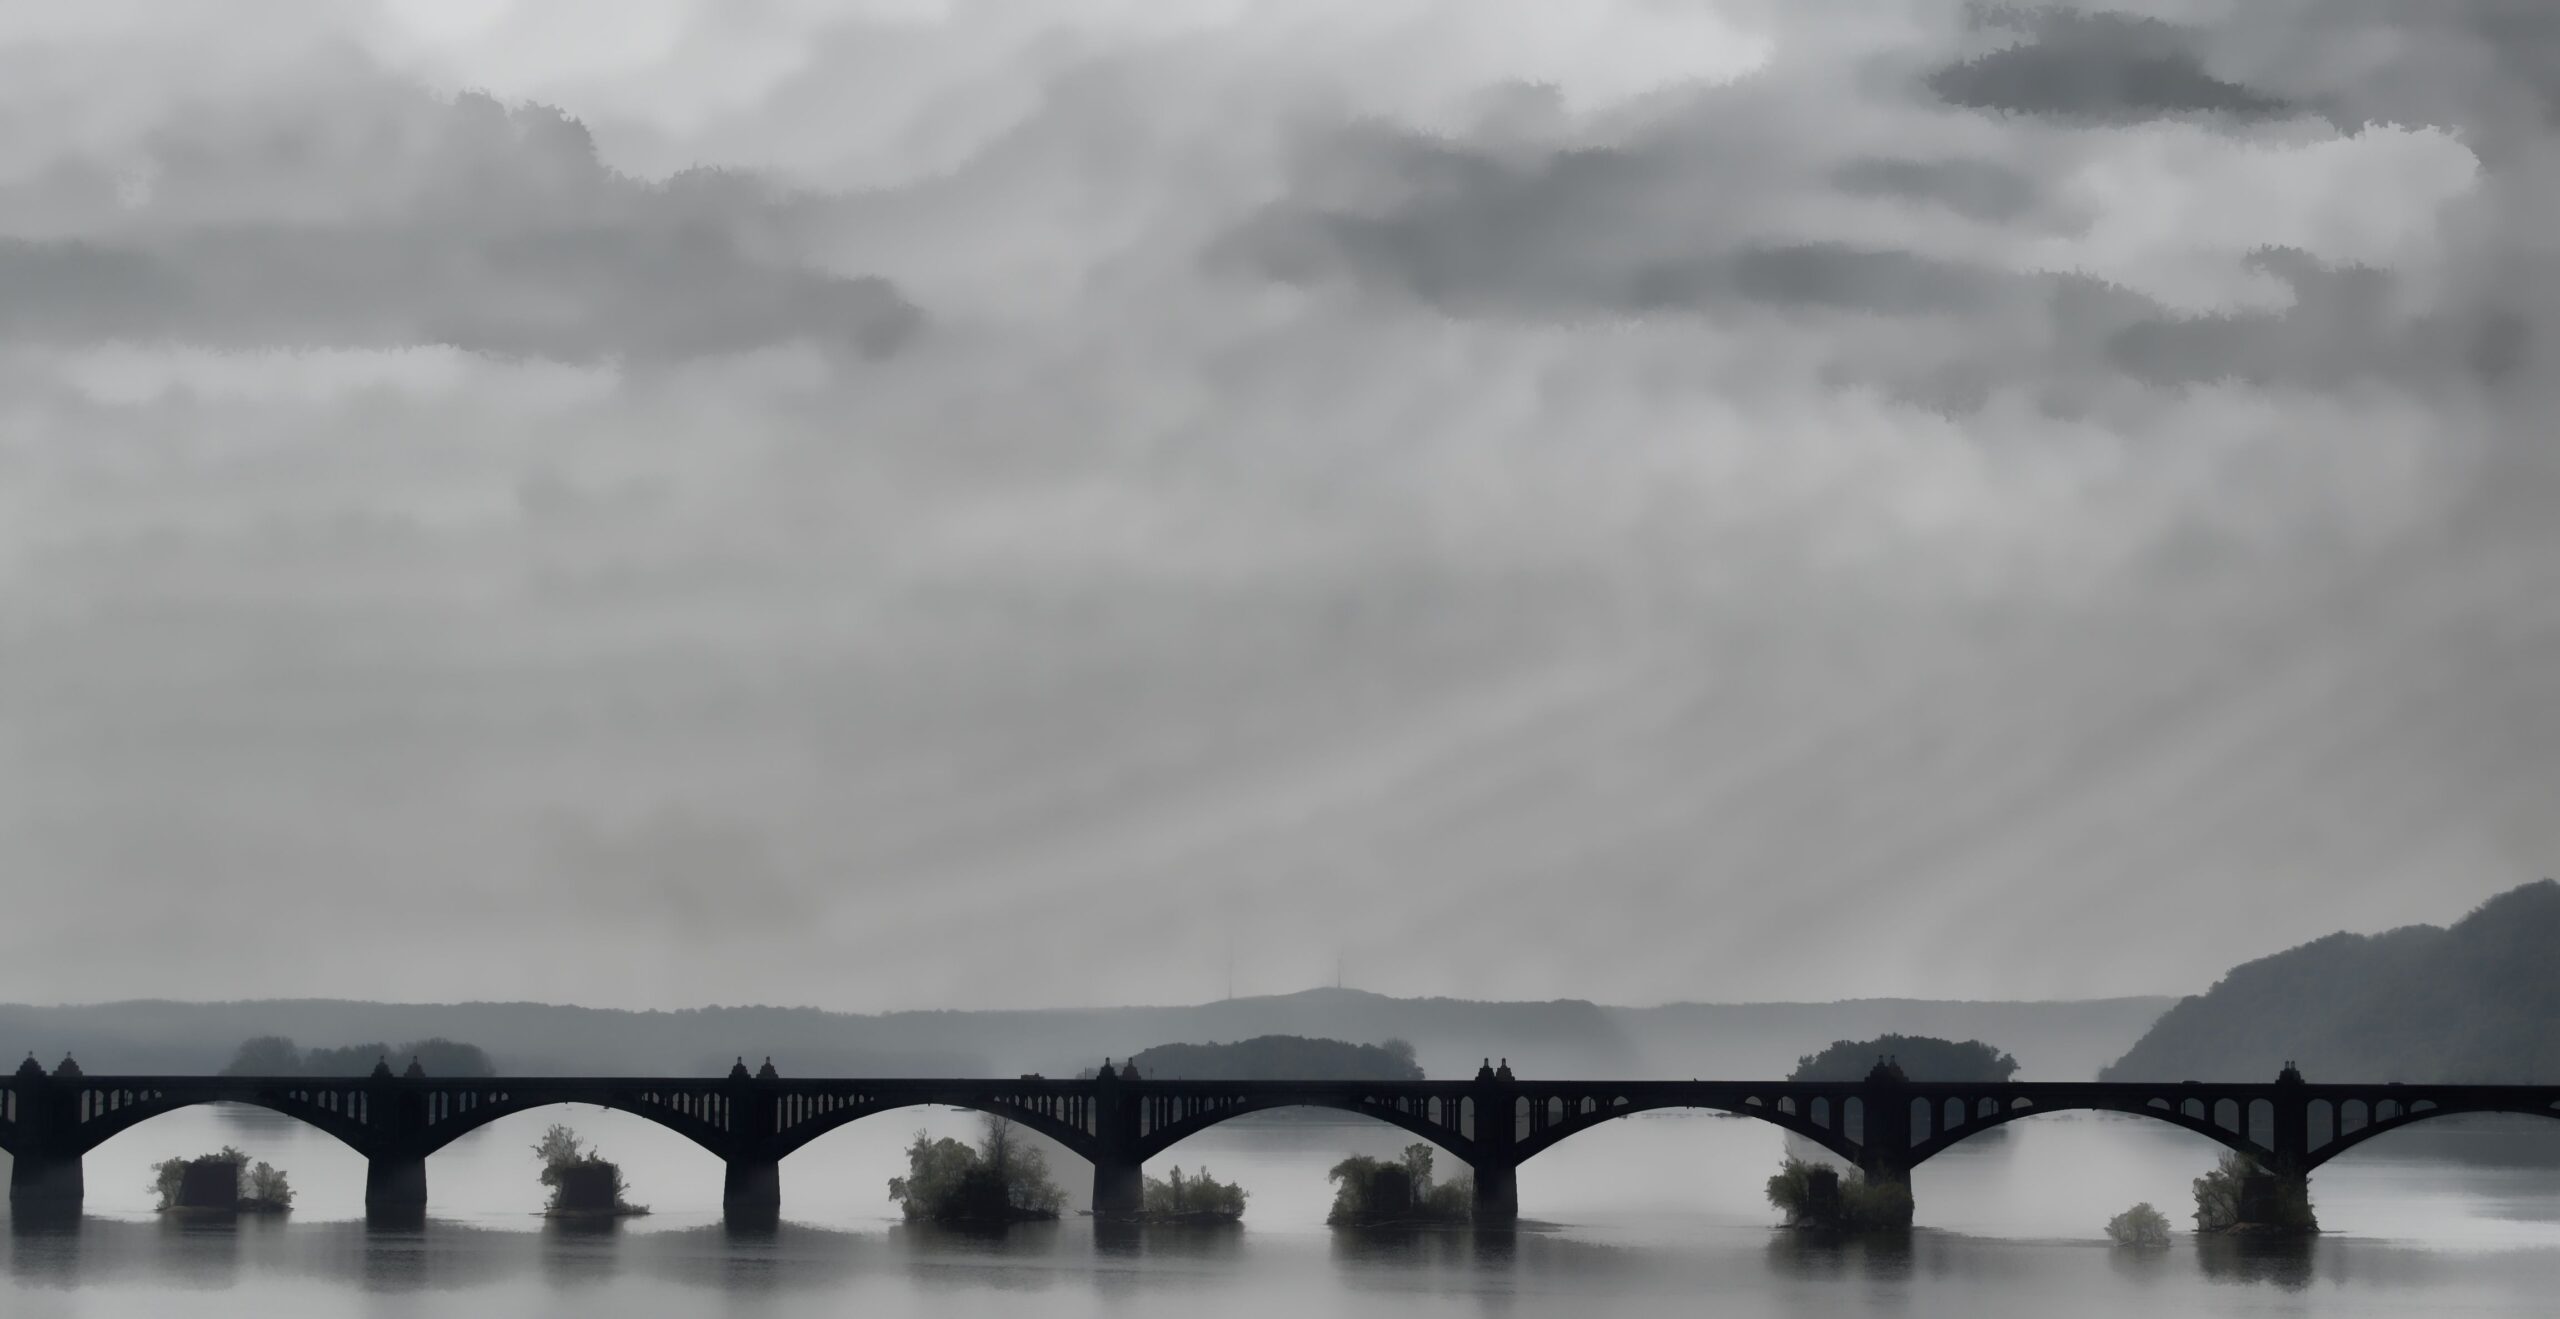 Susquehanna Bridge